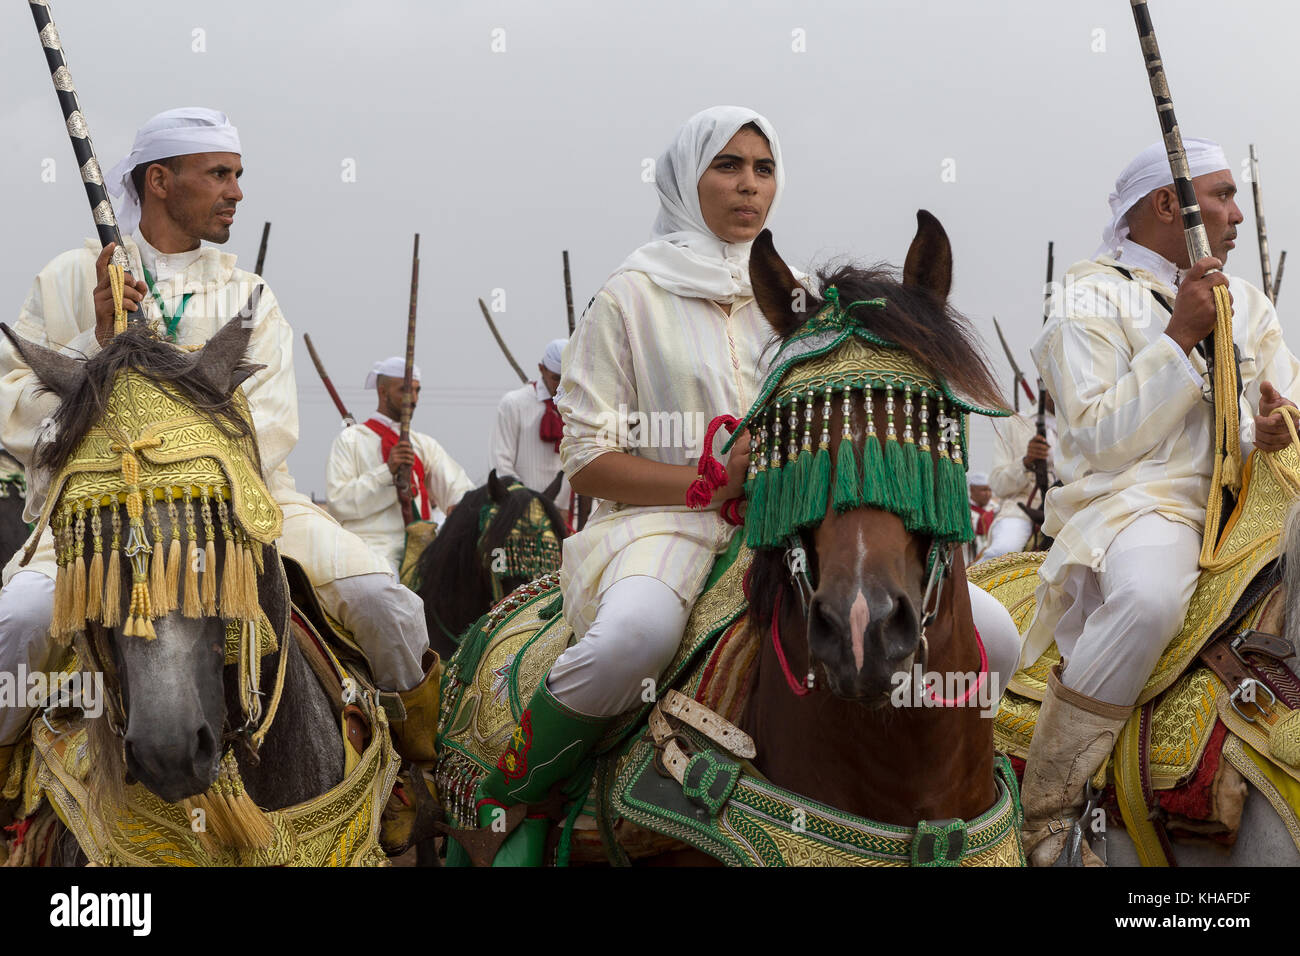 Fantasía es una exhibición de equitación tradicional en el Magreb realizadas durante festivales culturales y para cerrar las celebraciones de boda magrebí. Foto de stock